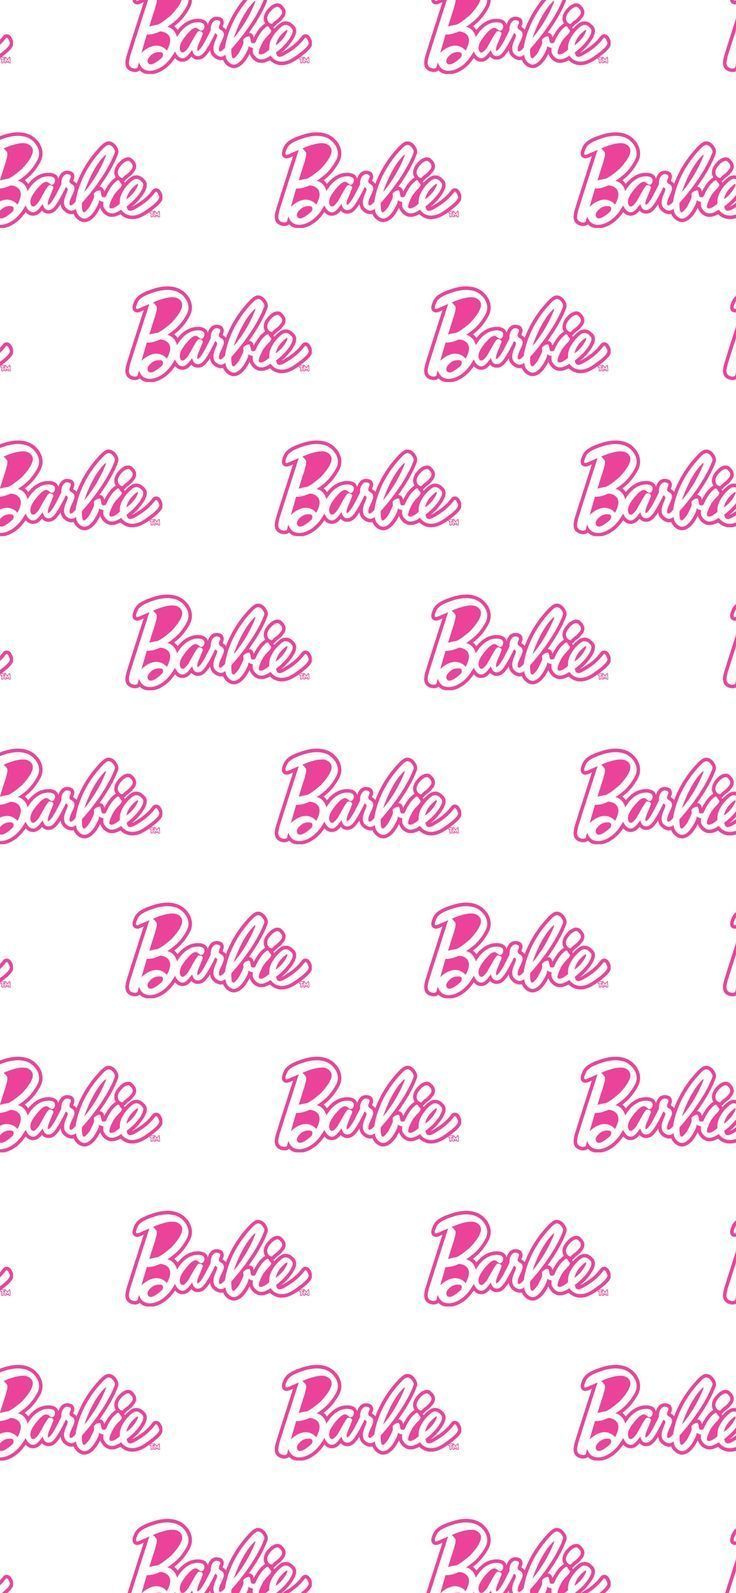 barbie #wallpaper. iPhone wallpaper tumblr aesthetic, Pink wallpaper iphone, iPhone. Pink wallpaper iphone, iPhone wallpaper, iPhone wallpaper tumblr aesthetic